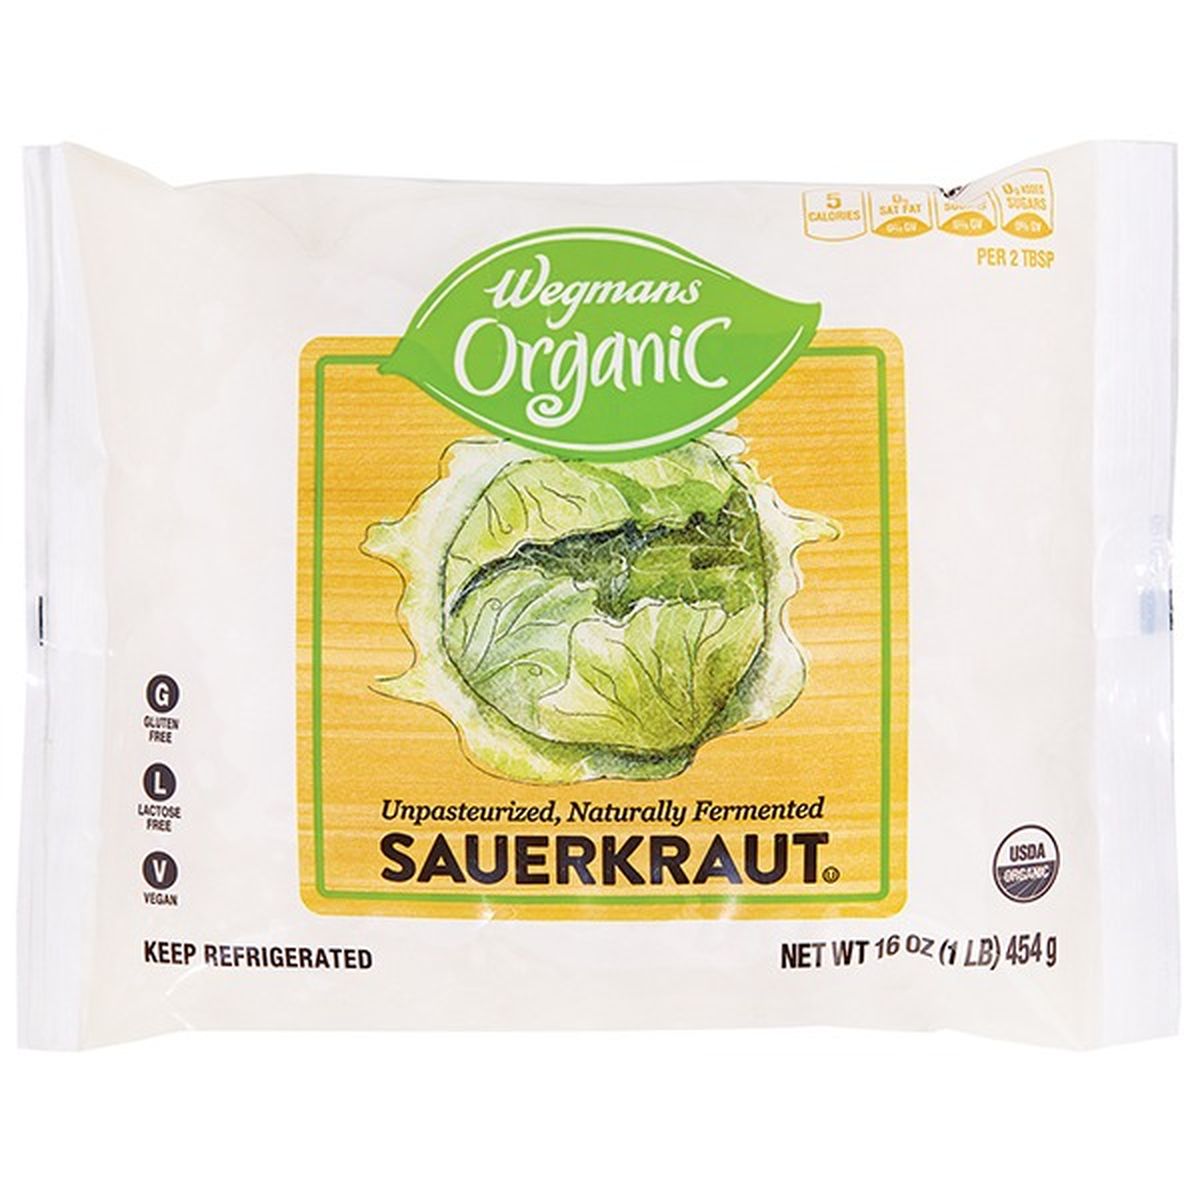 Calories in Wegmans Organic Sauerkraut